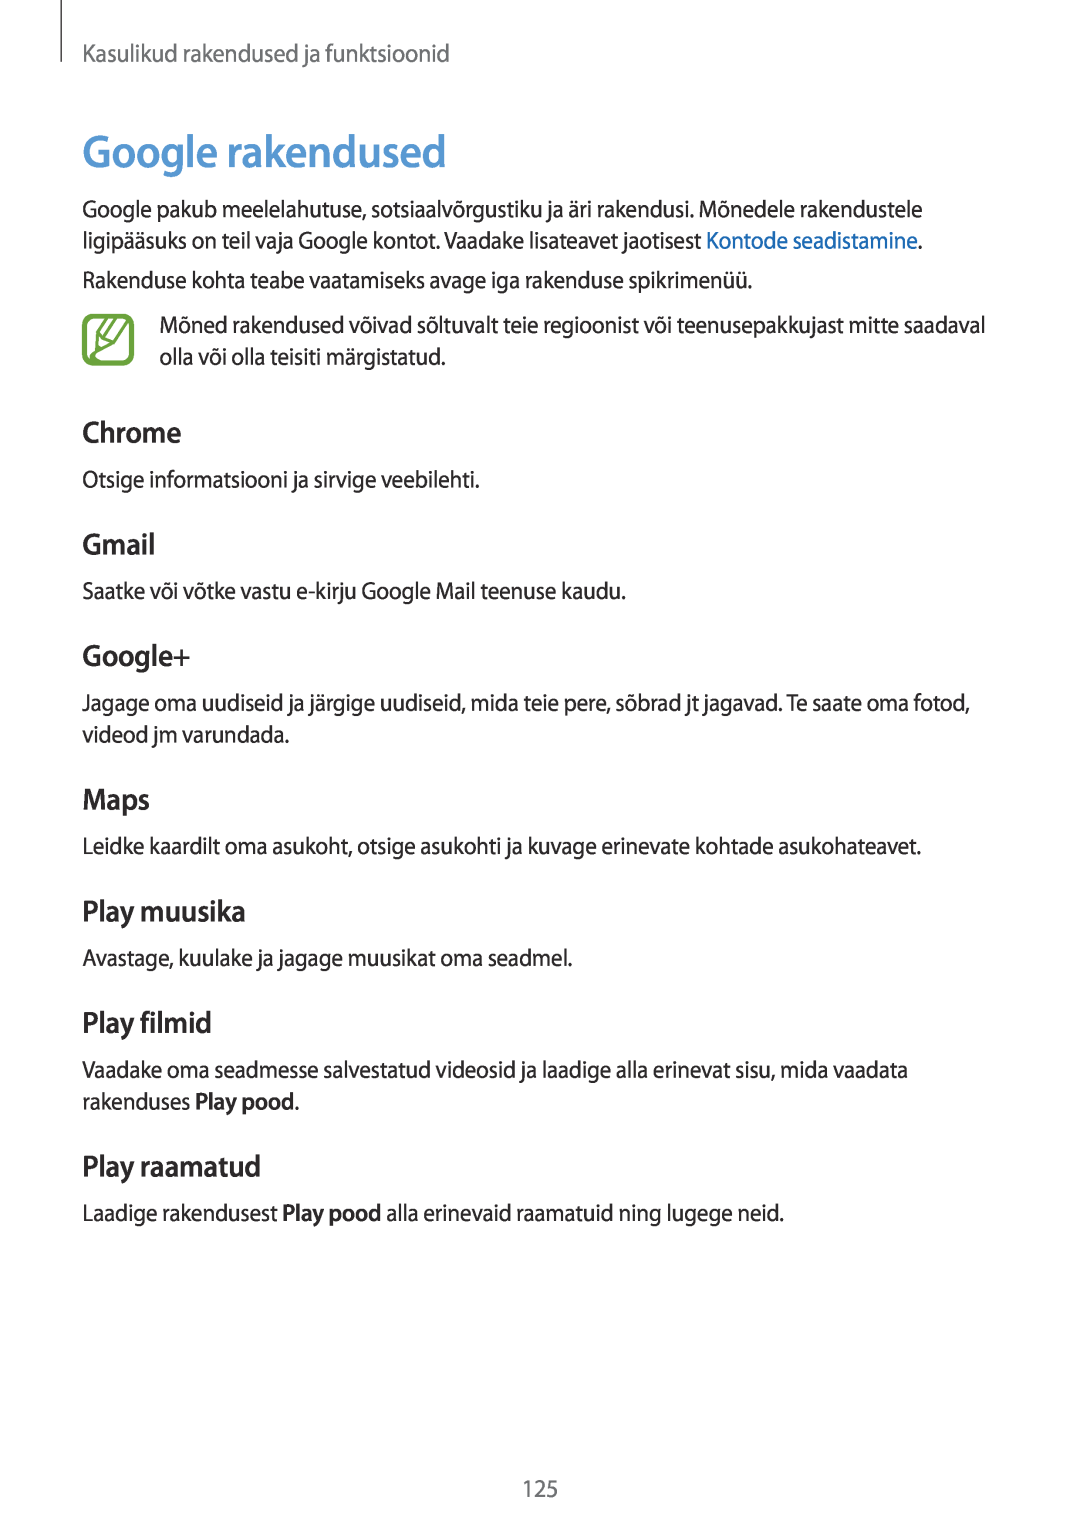 Samsung SM-T700NTSASEB manual Google rakendused, Chrome, Gmail, Google+, Maps, Play muusika, Play filmid, Play raamatud 